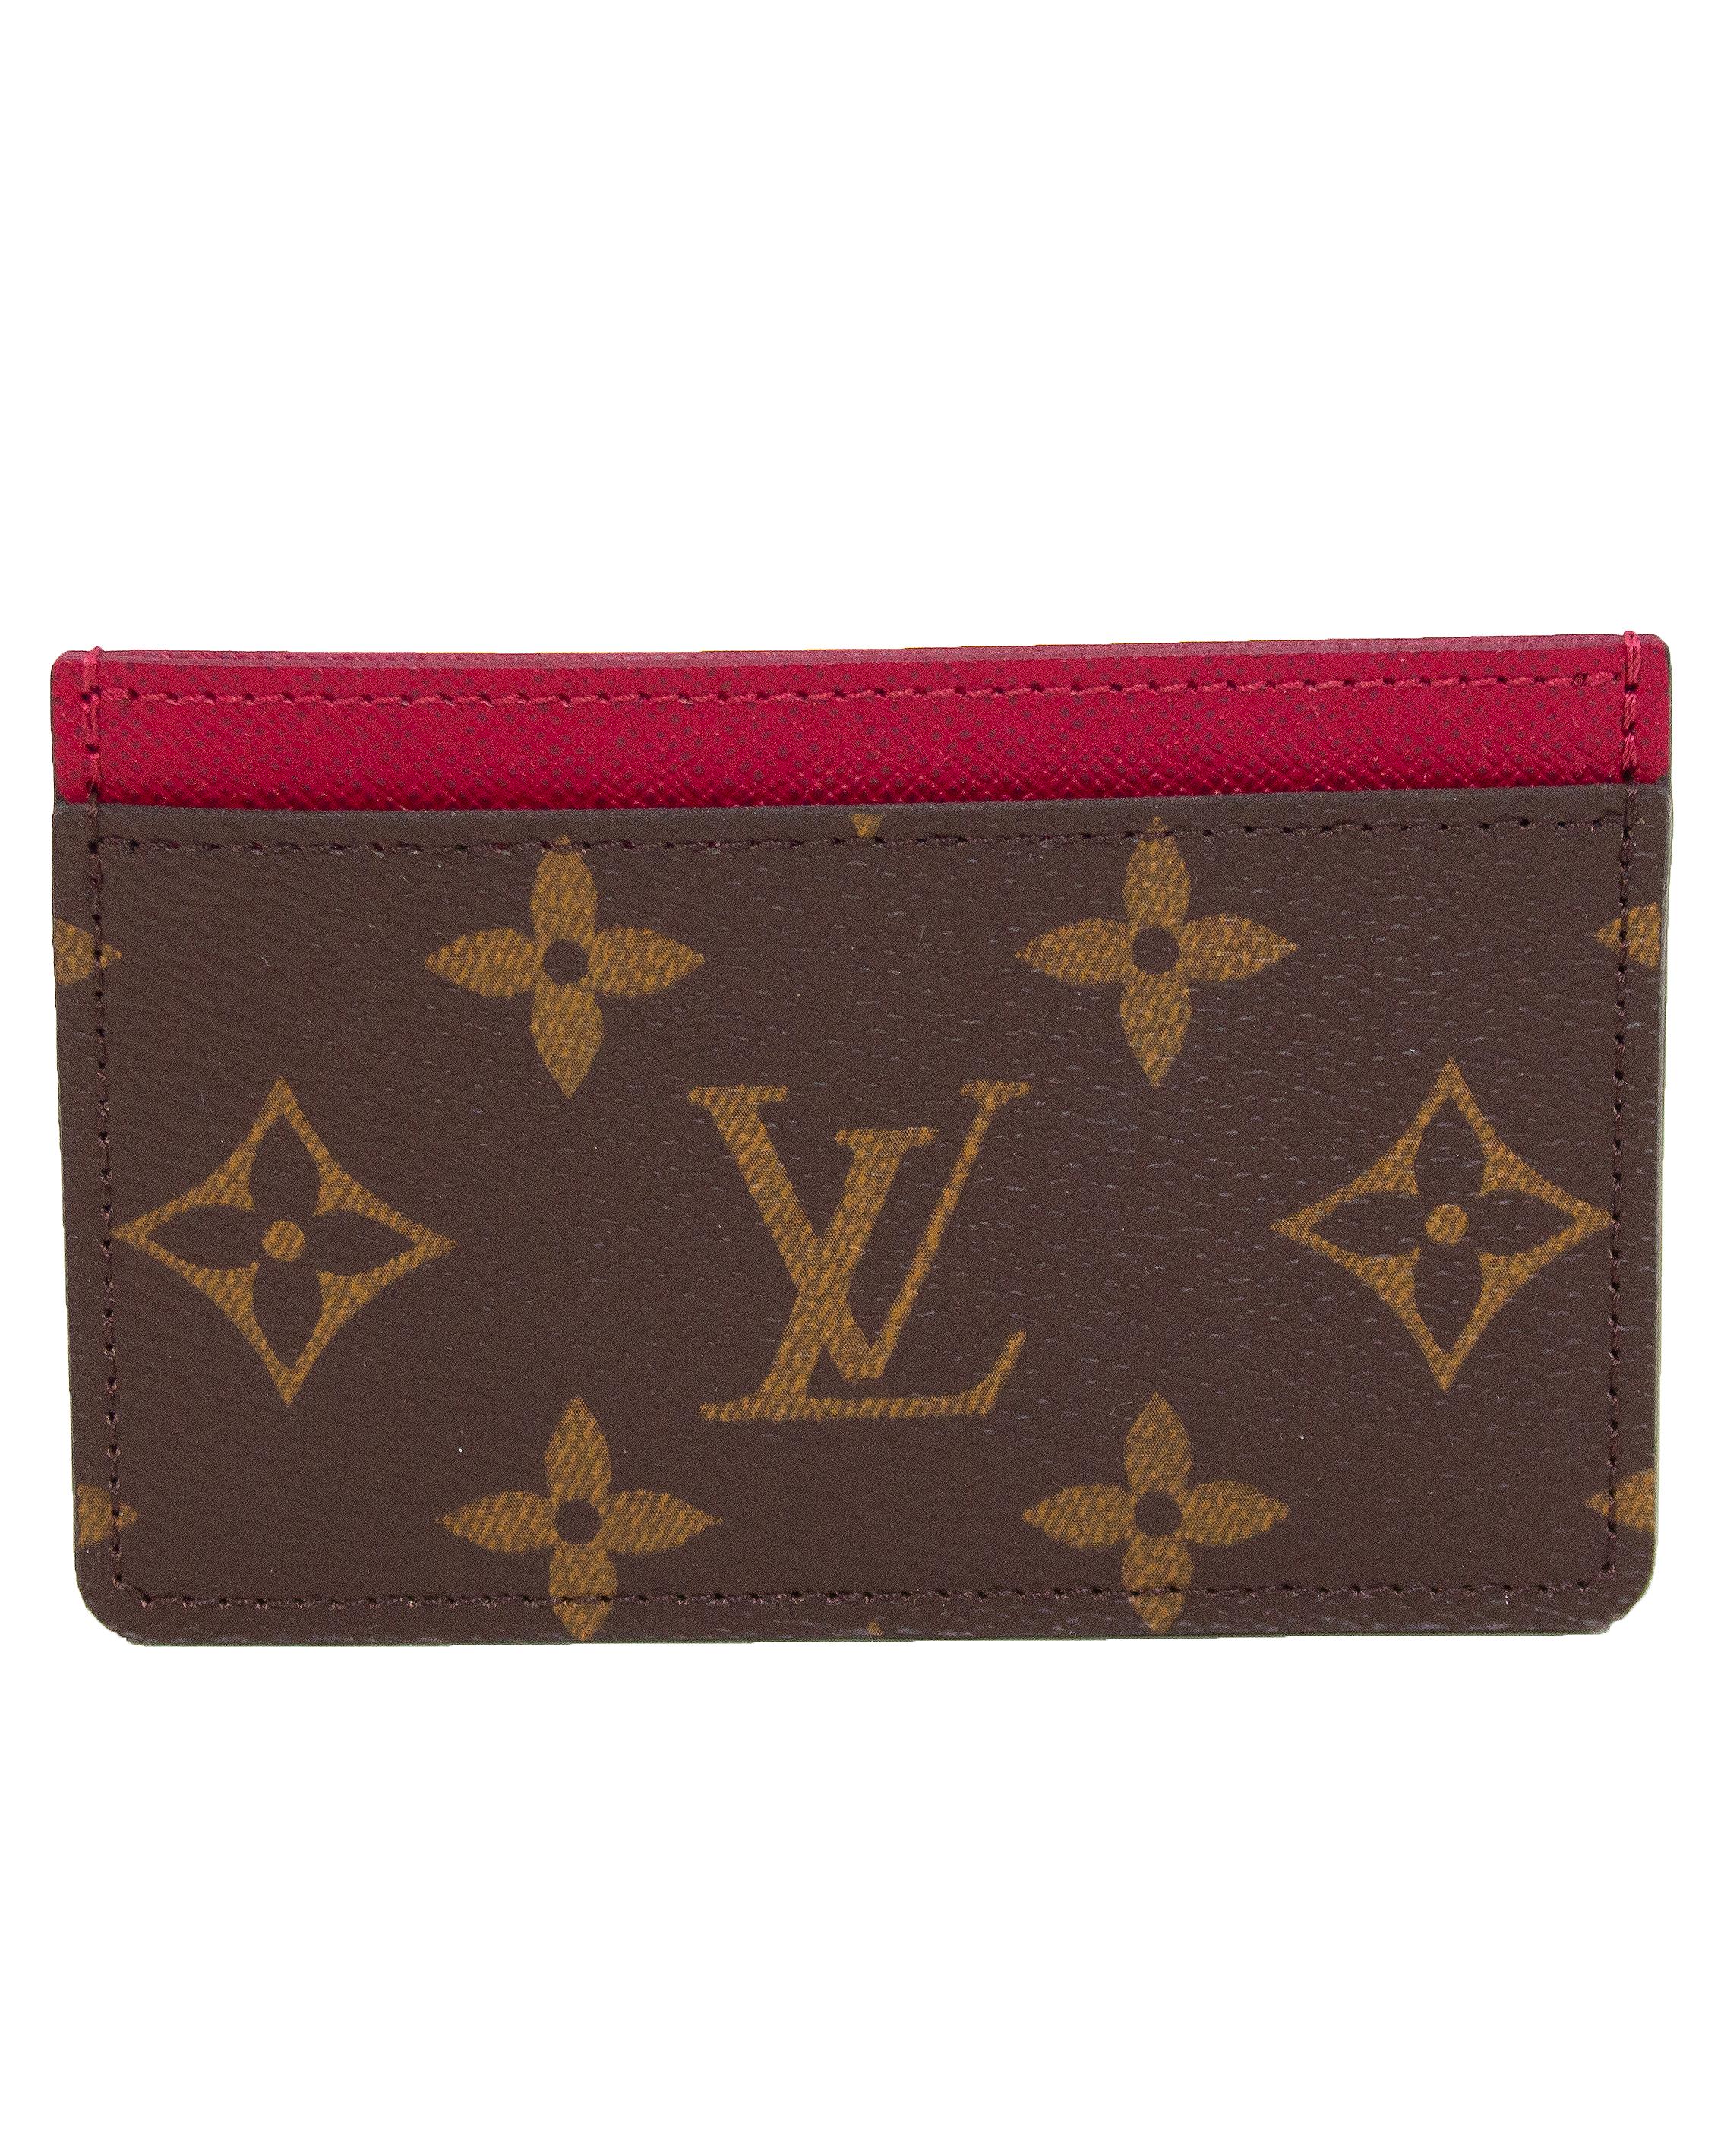 Porte-cartes Monogram de Louis Vuitton avec intérieur aux accents framboise datant des années 2000. En excellent état avec pochette de poussière assortie, l'accessoire parfait et intemporel. 

4.5